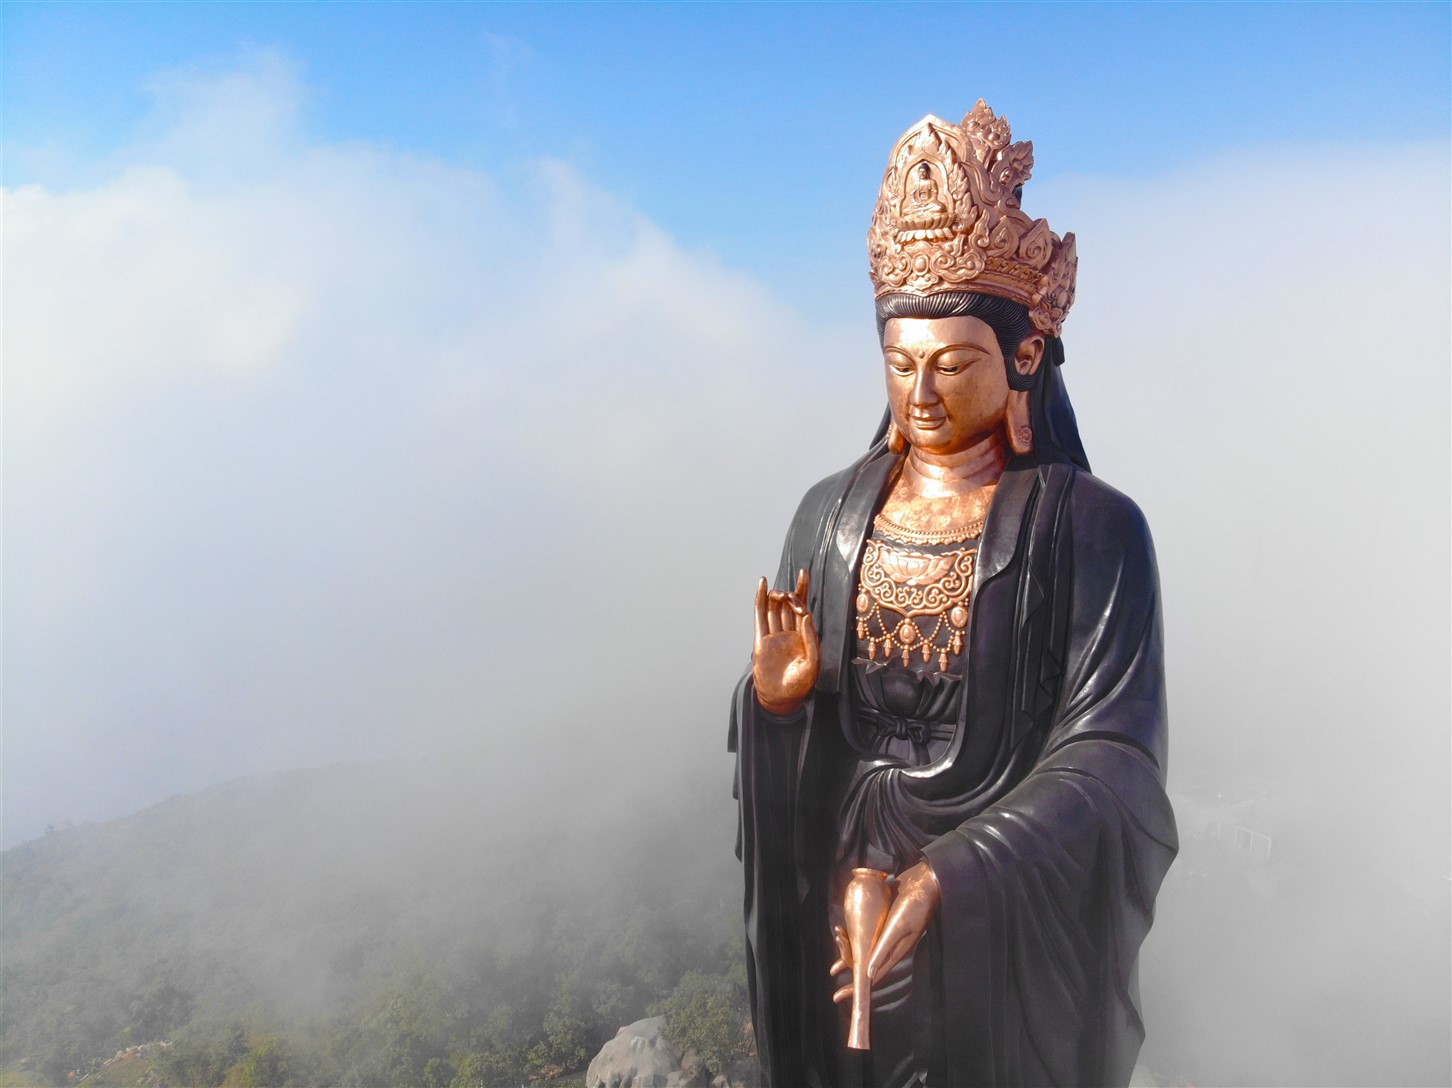 Tượng Phật Bà bằng đồng mang một vẻ đẹp tuyệt vời với sự khéo léo trong lĩnh vực điêu khắc, hình ảnh này mang lại cho con người sự bình an và tâm linh vững vàng khi được khắc chạm và đặt trong nhà thờ, chùa chiền.